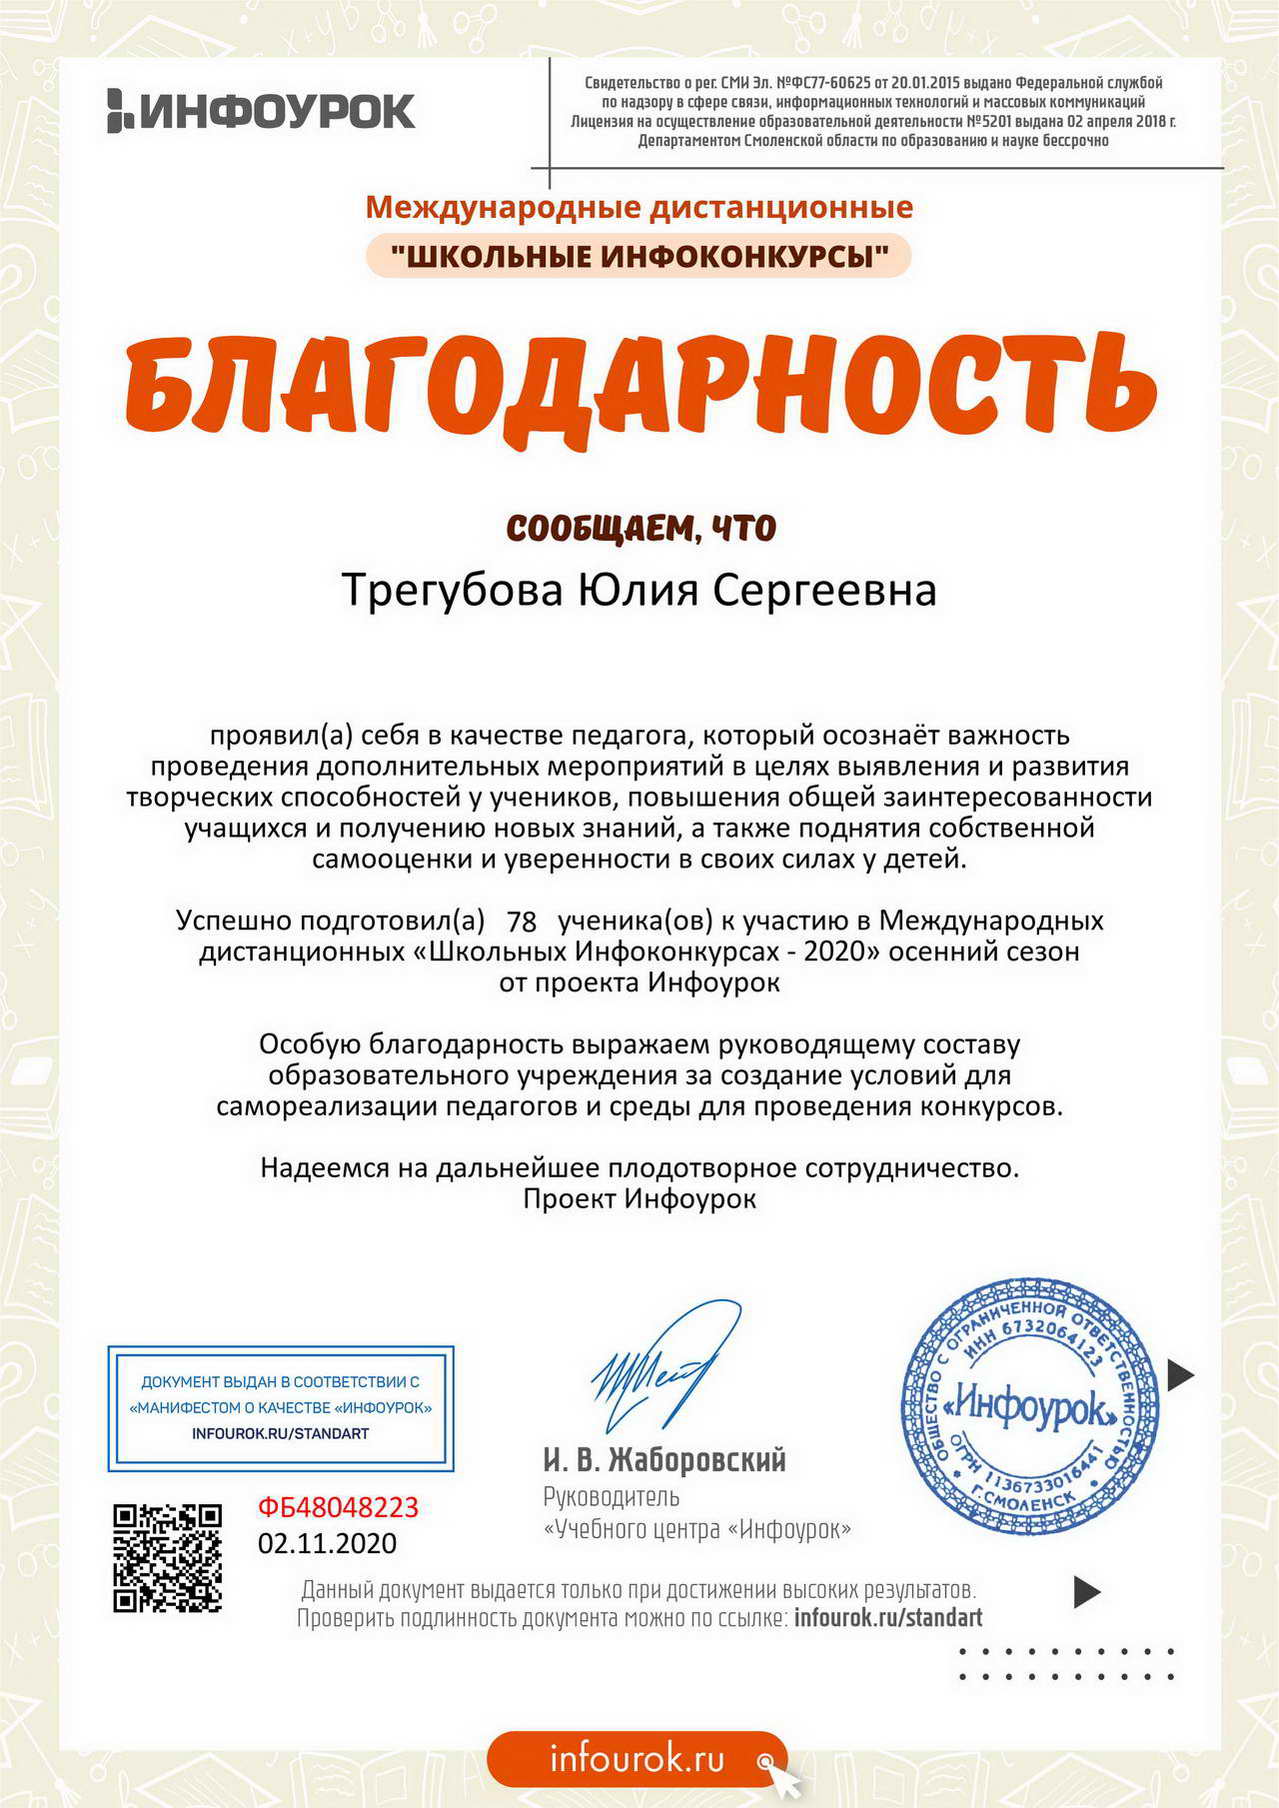 Благодарность директору от проекта Infourok.ru №ФБ48048223 _новый размер_новый размер.jpg